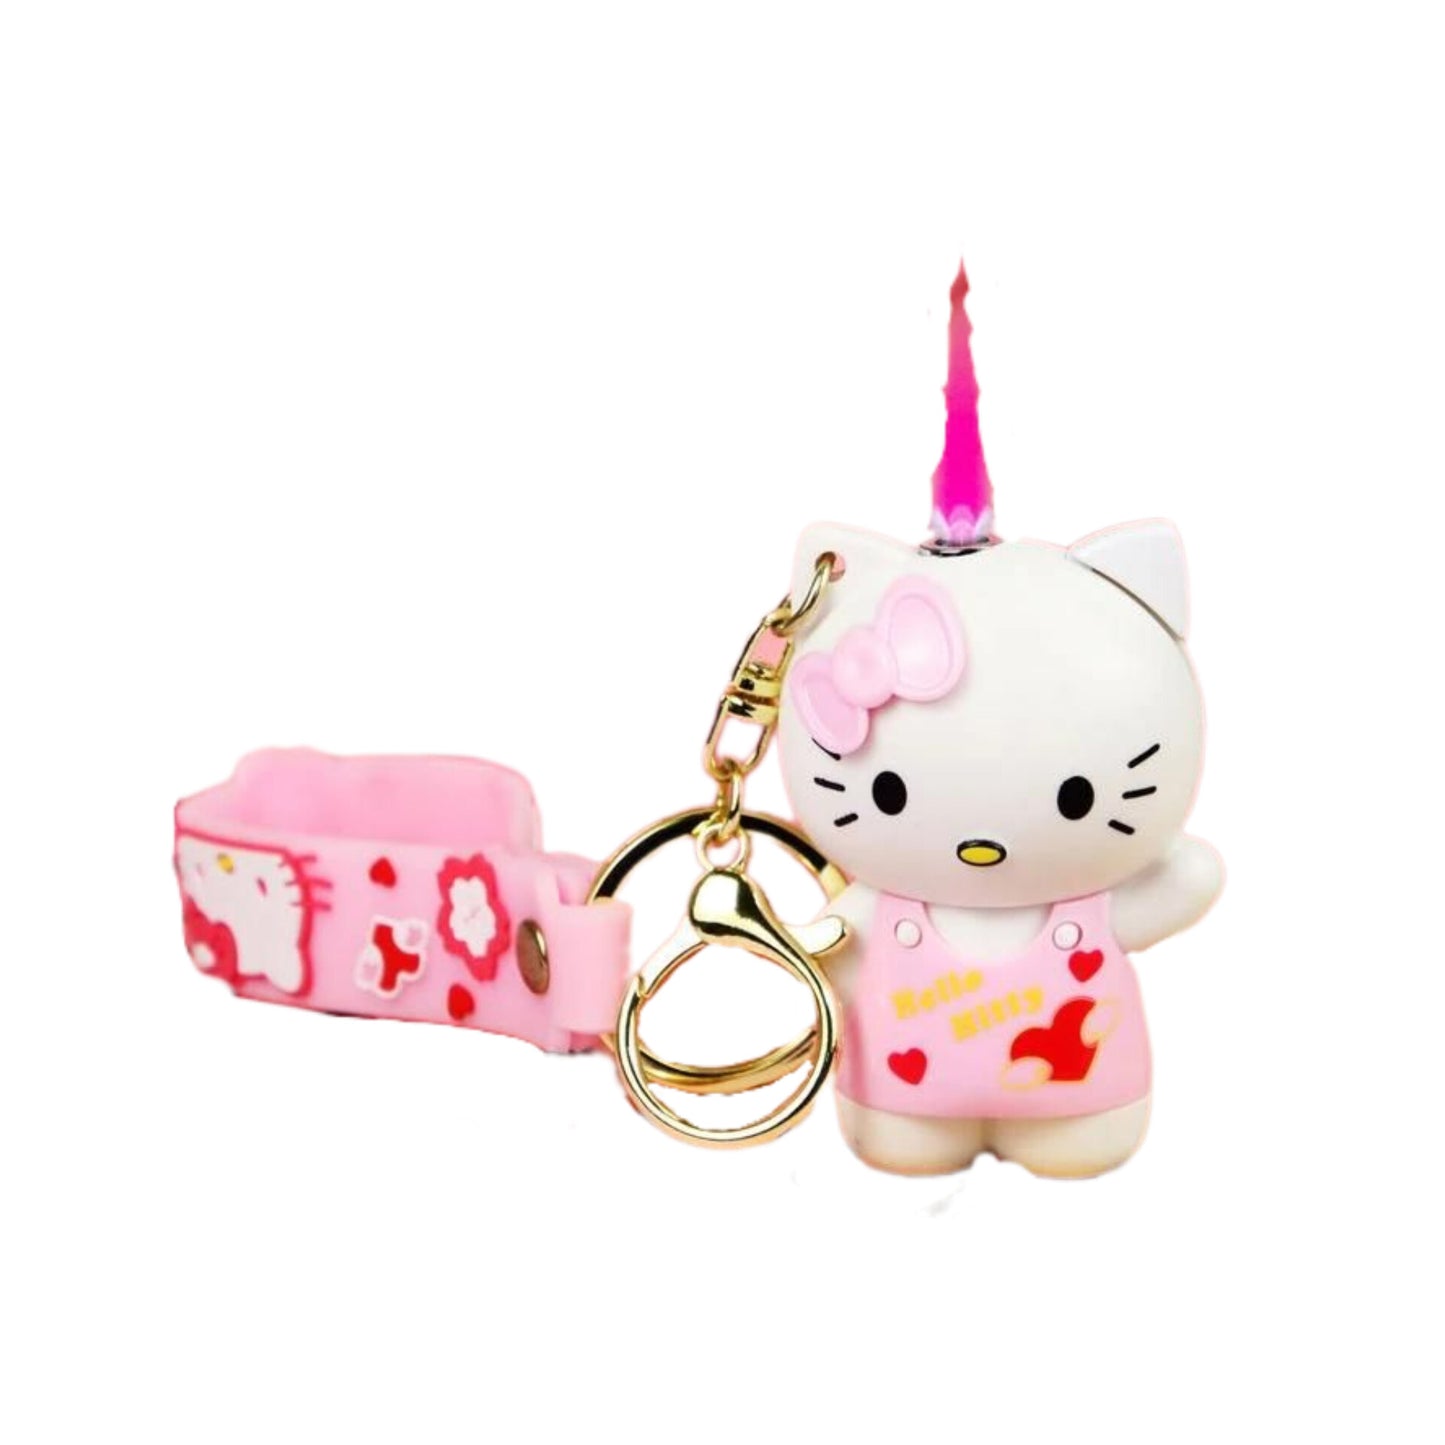 3D Hello Kitty Lighter, Pink Kitty